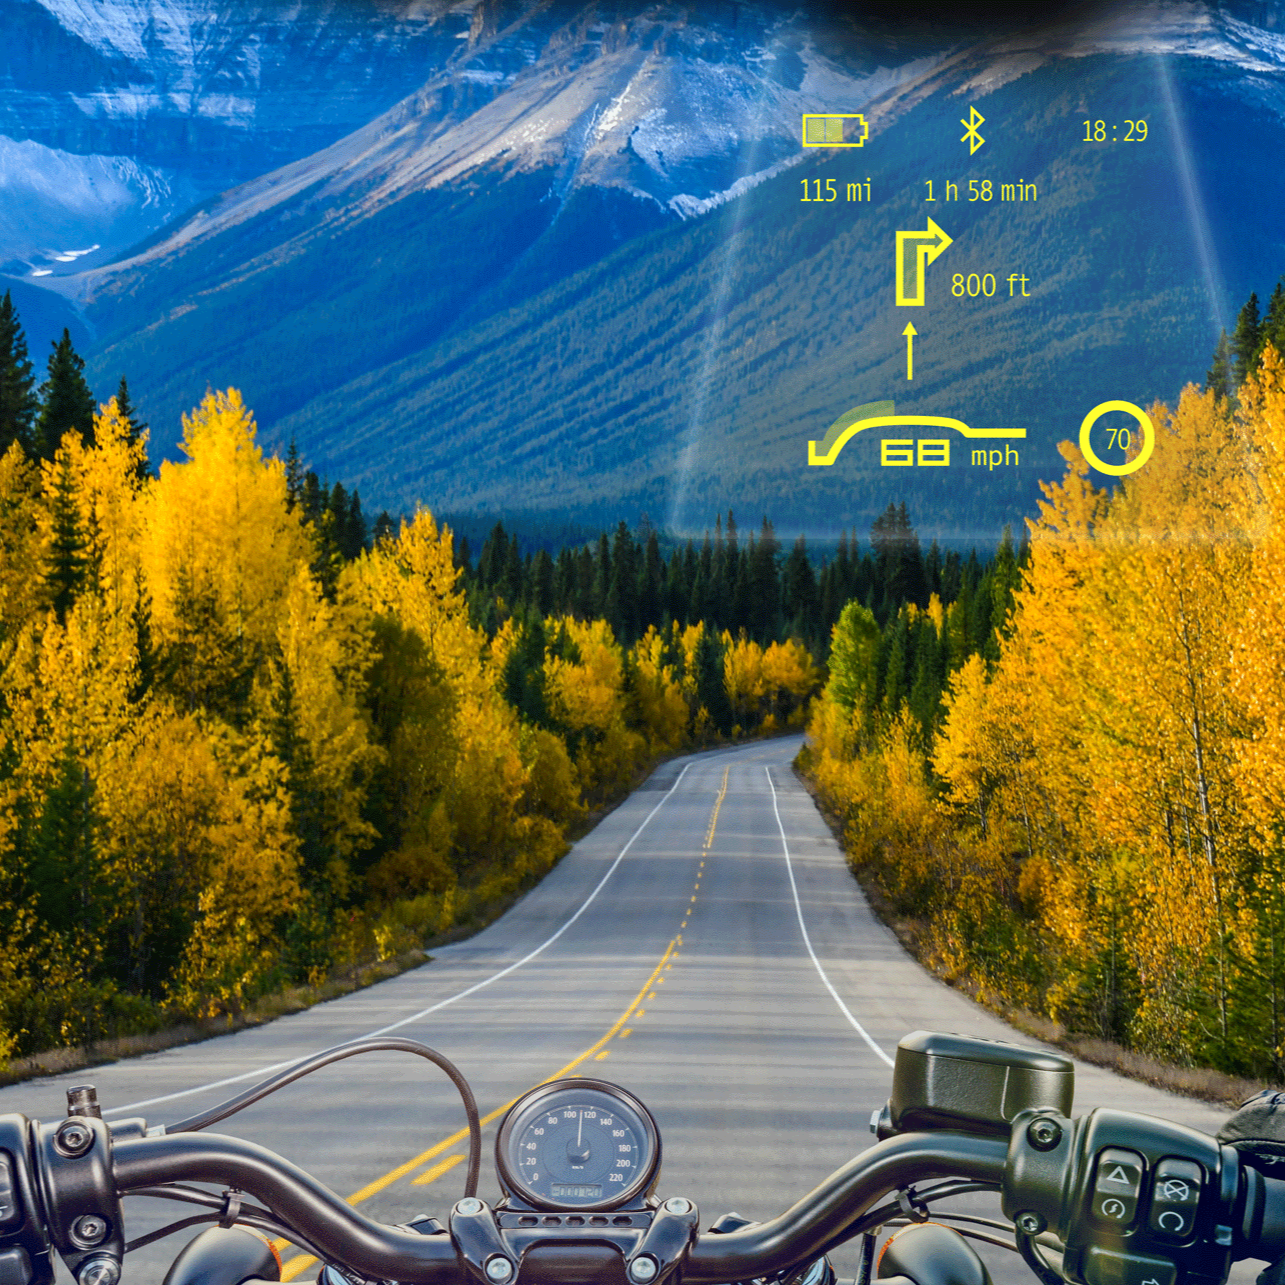 Im TILSBERK Head-Up Display für deinen Motorradhelm kannst du selbst wählen, welche Maßeinheiten angezeigt werden, in diesem Beispiel: mph sowie mi und ft